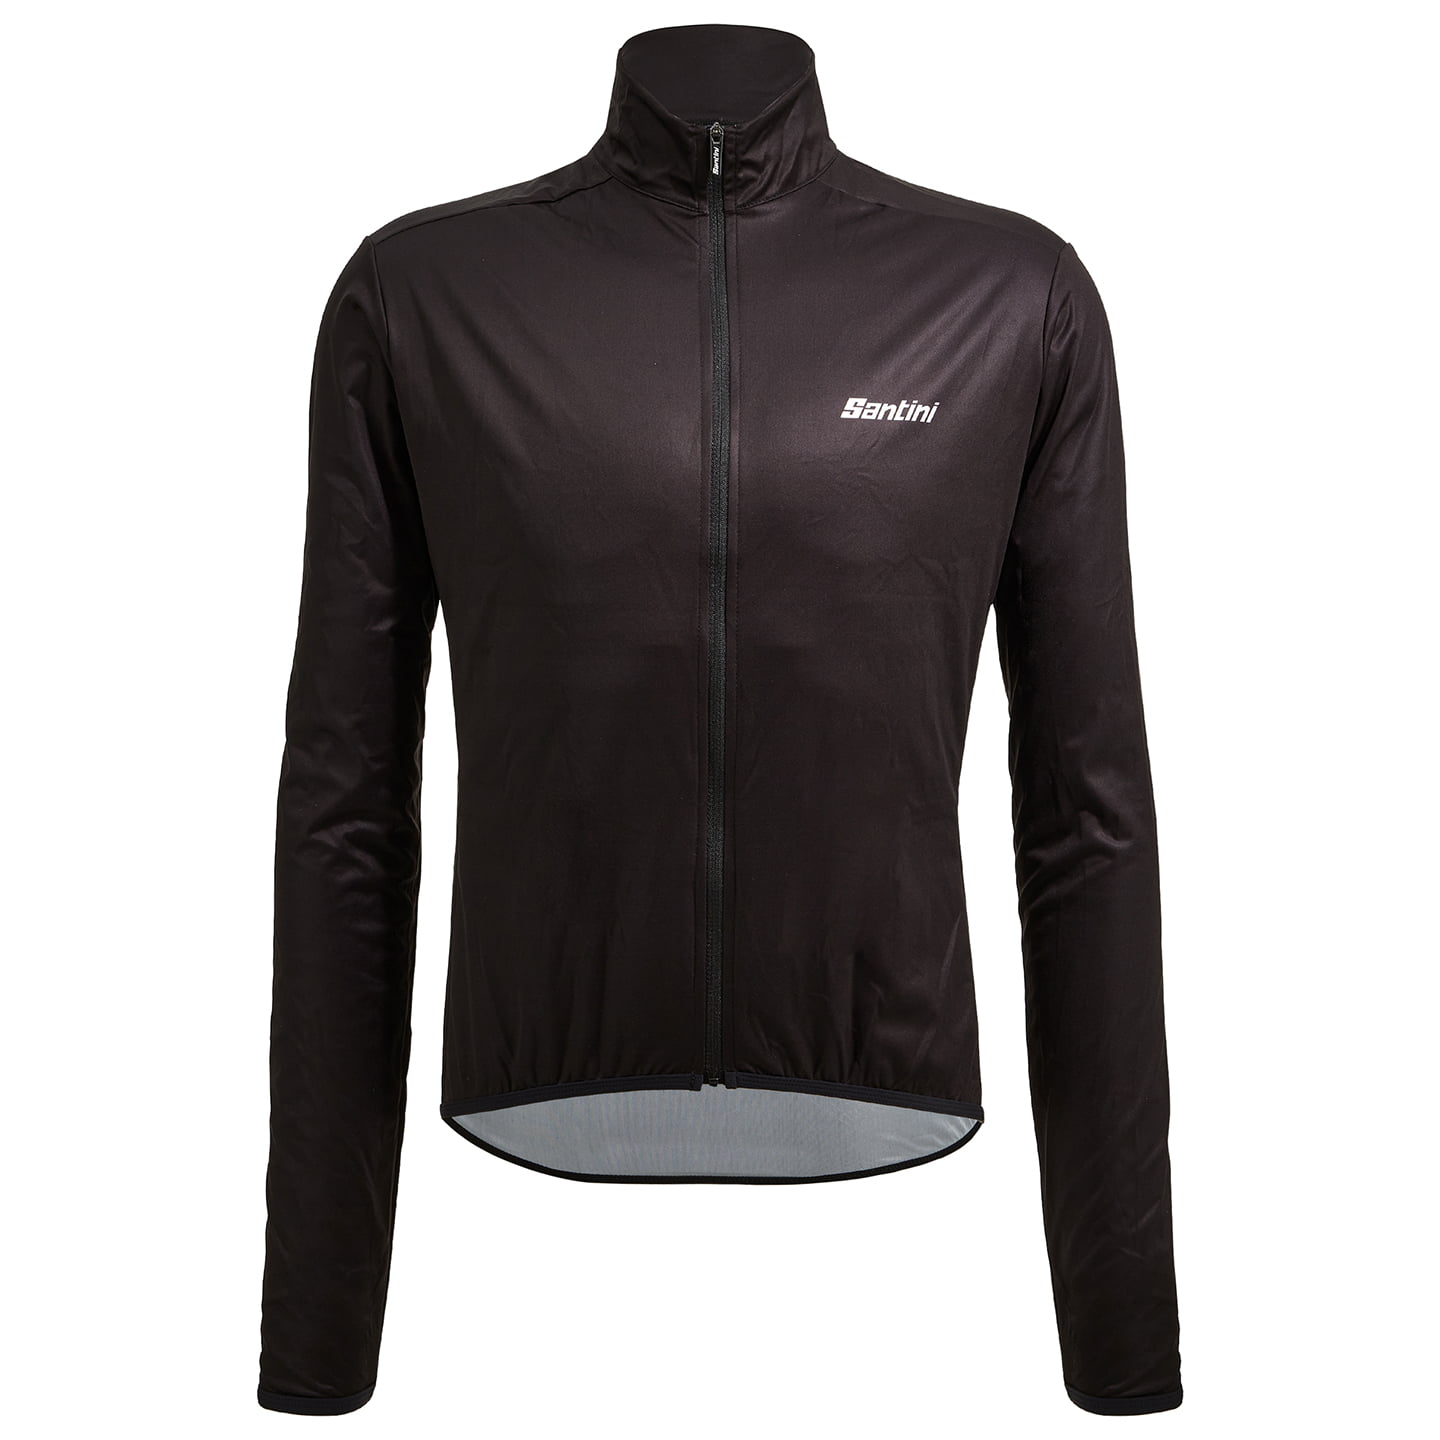 SANTINI Nebula Puro Wind Jacket Wind Jacket, for men, size M, Bike jacket, Cycling clothing